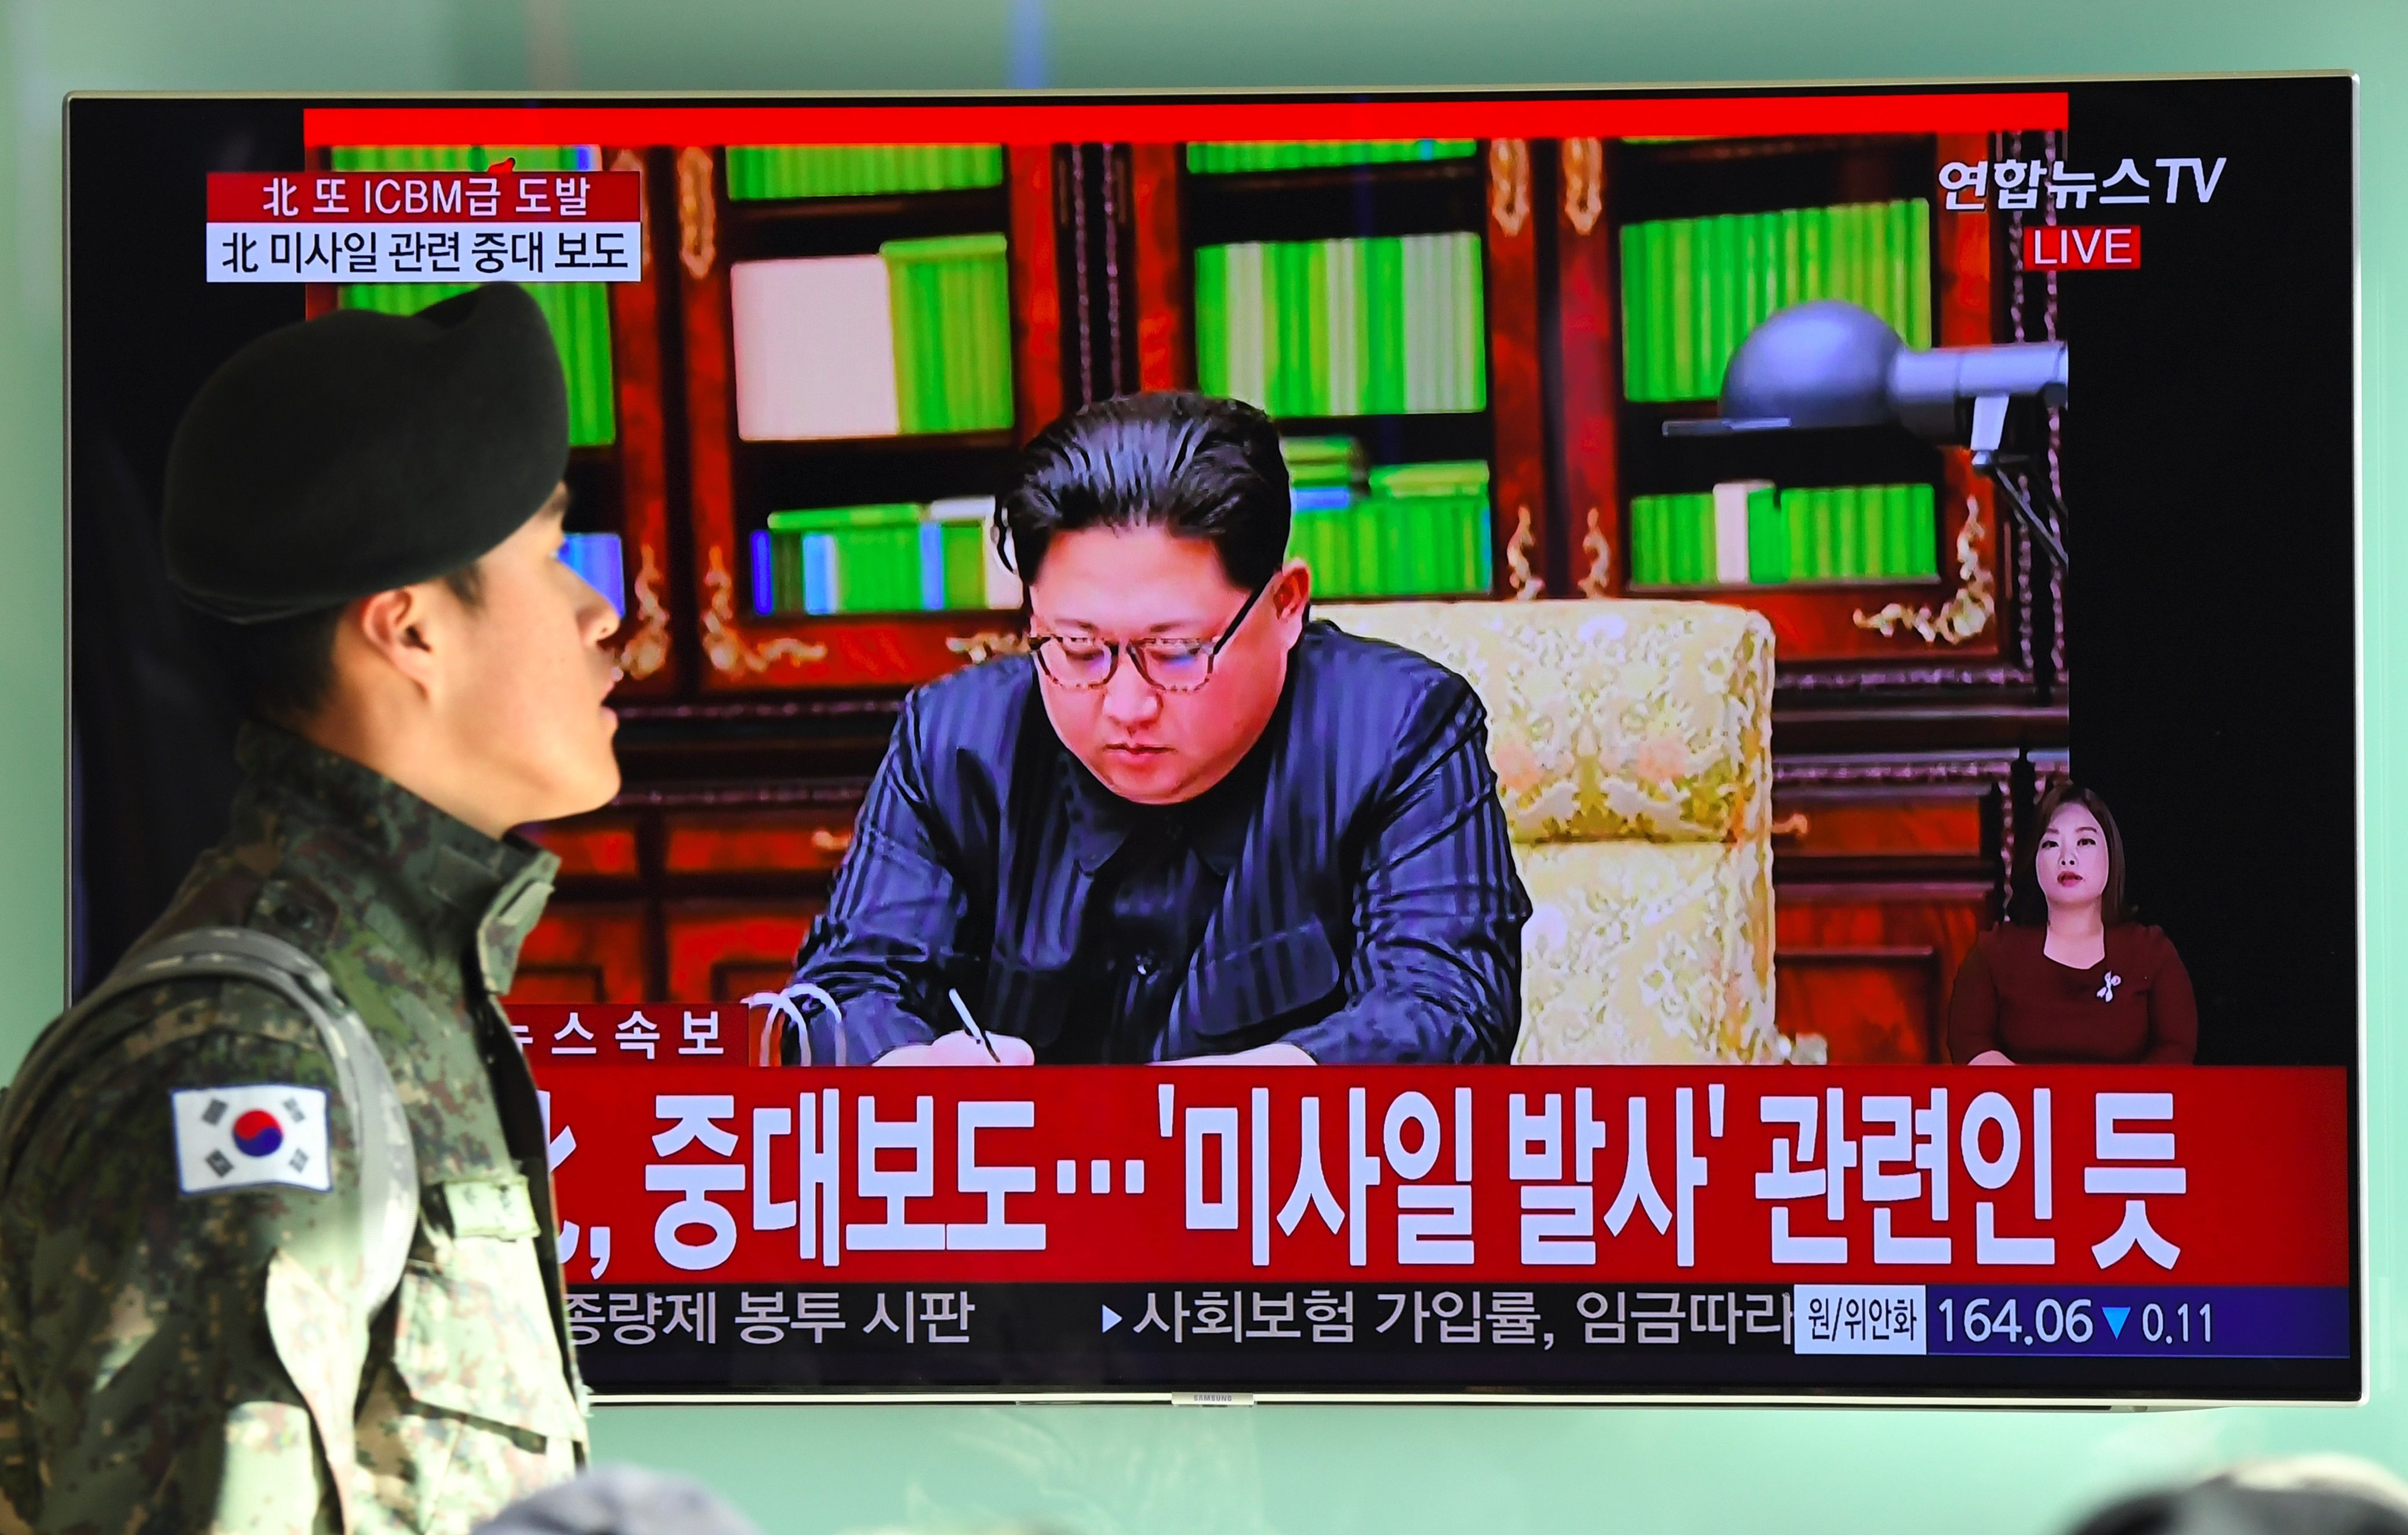 زعيم كوريا يشرف علي الإطلاق